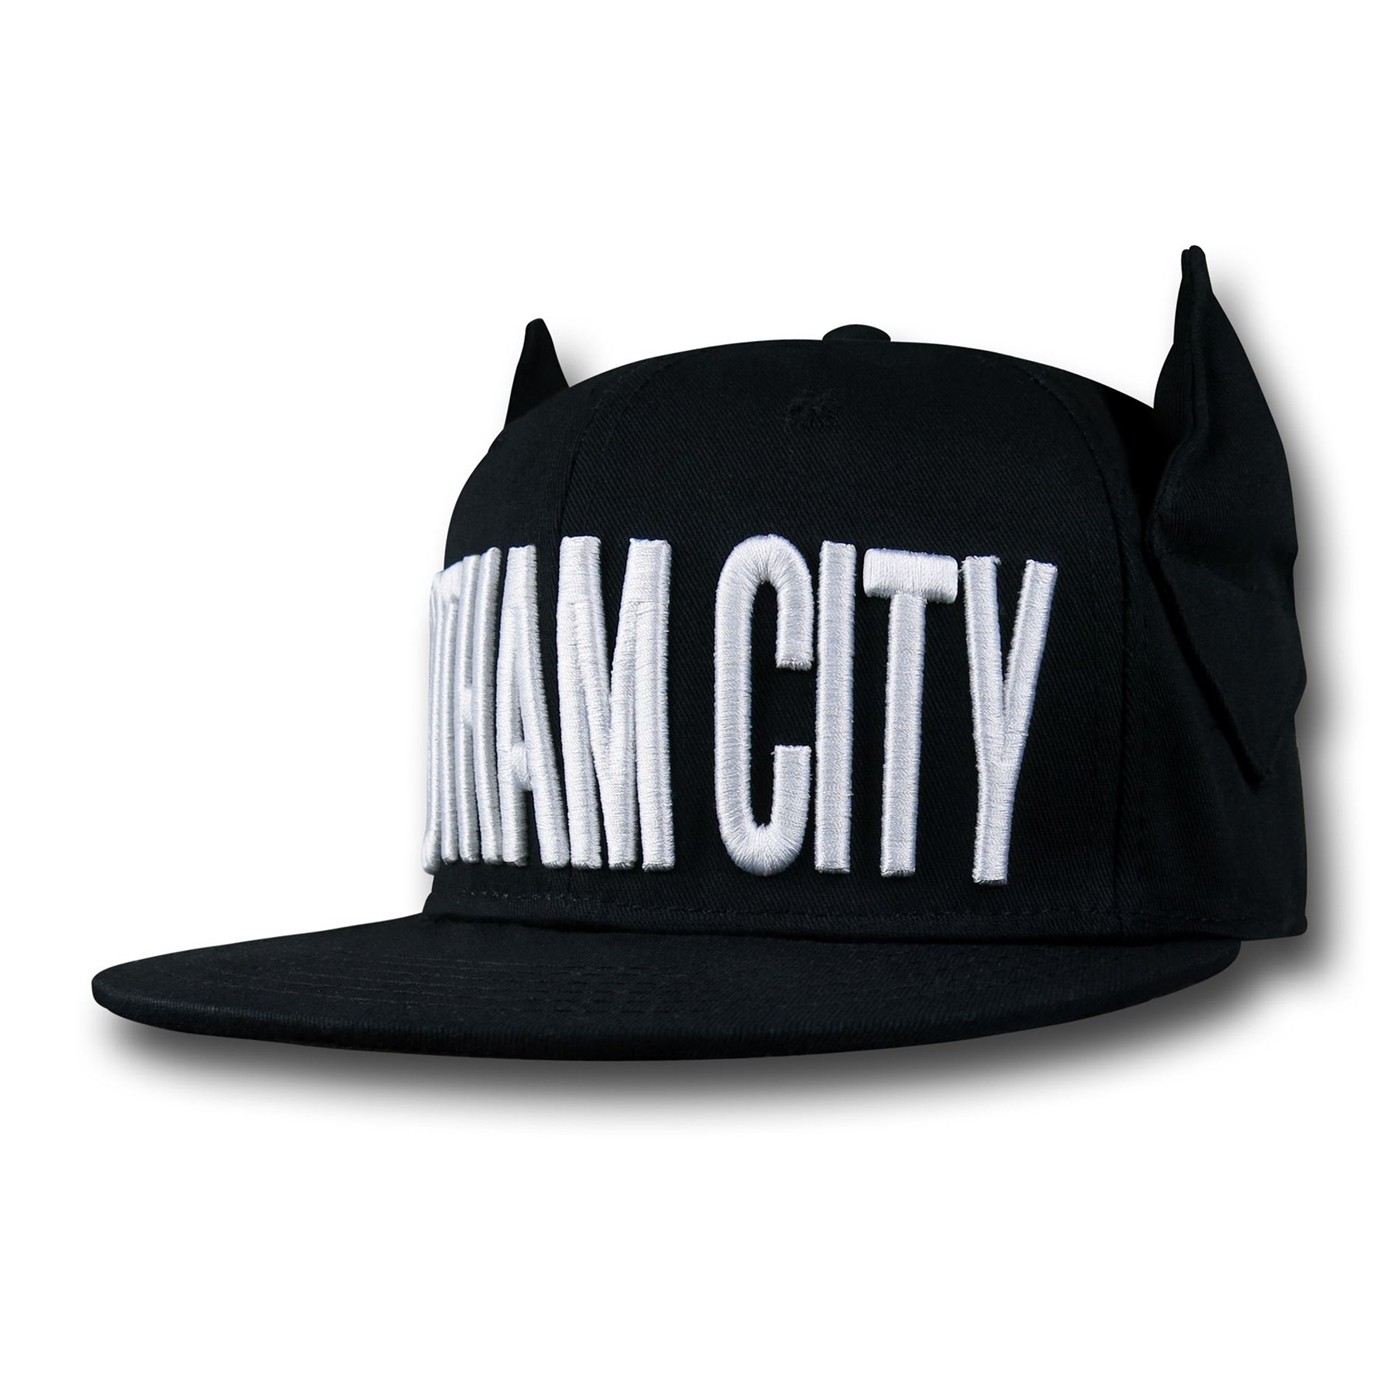 Batman Gotham City Eared Hat